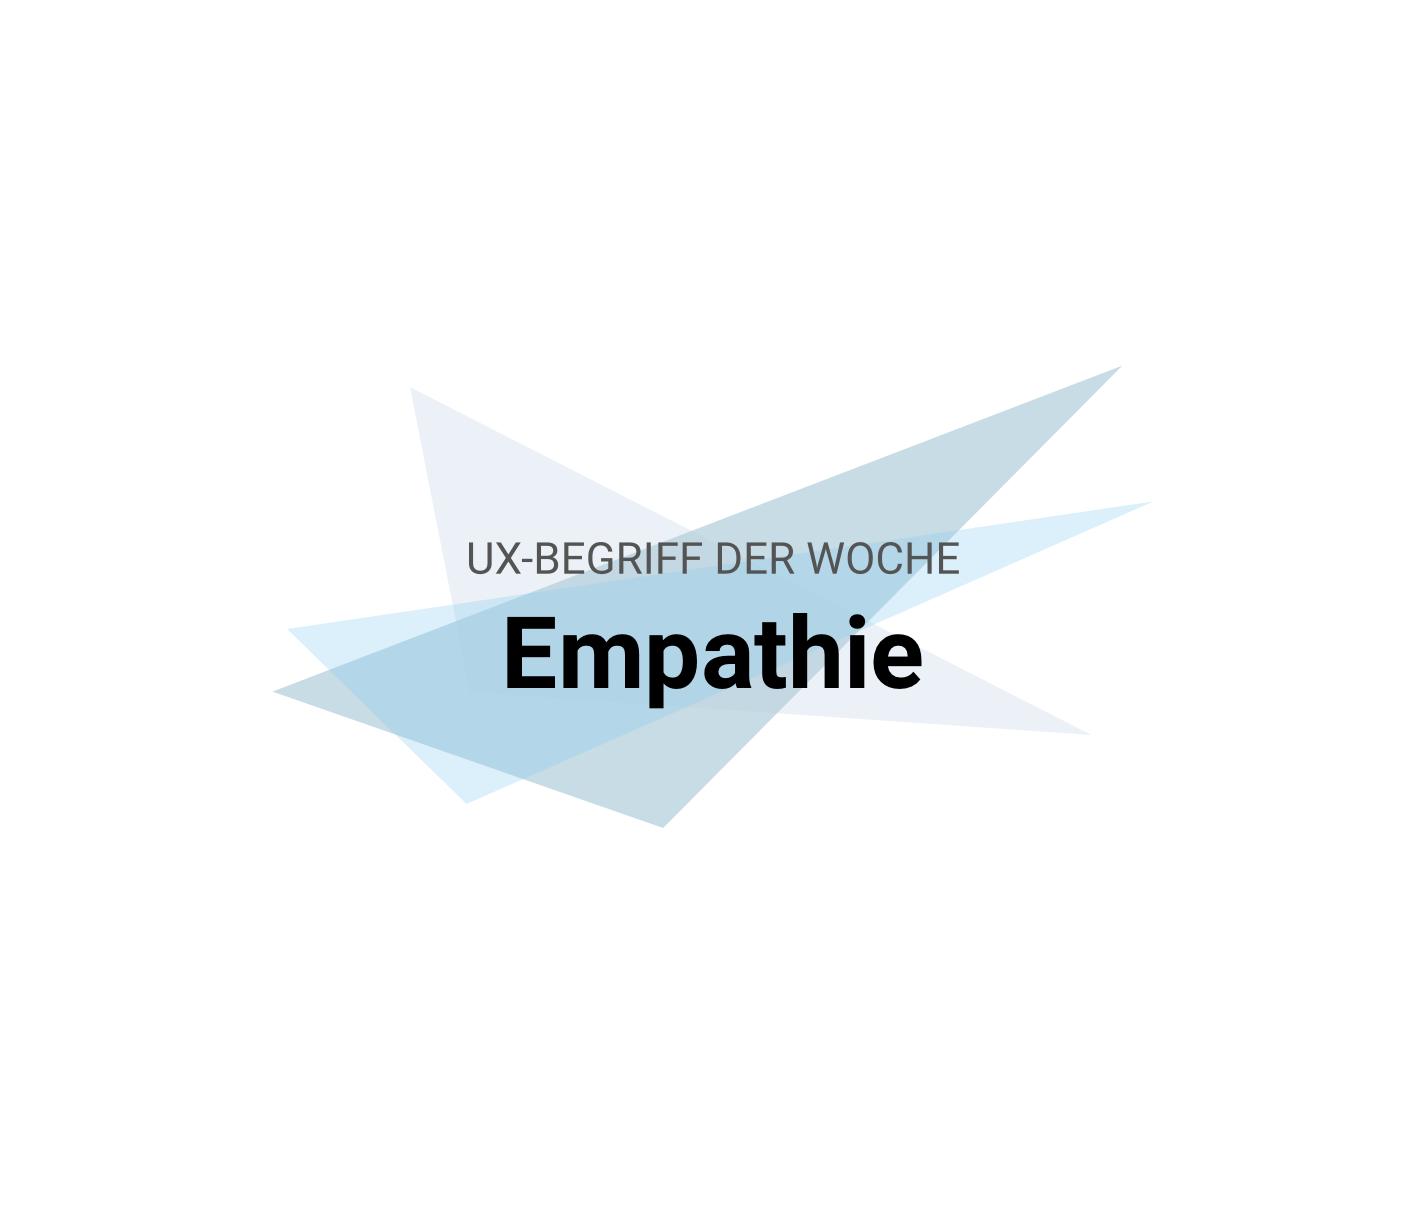 UX-Begriffe kurz erklärt: "Empathie"